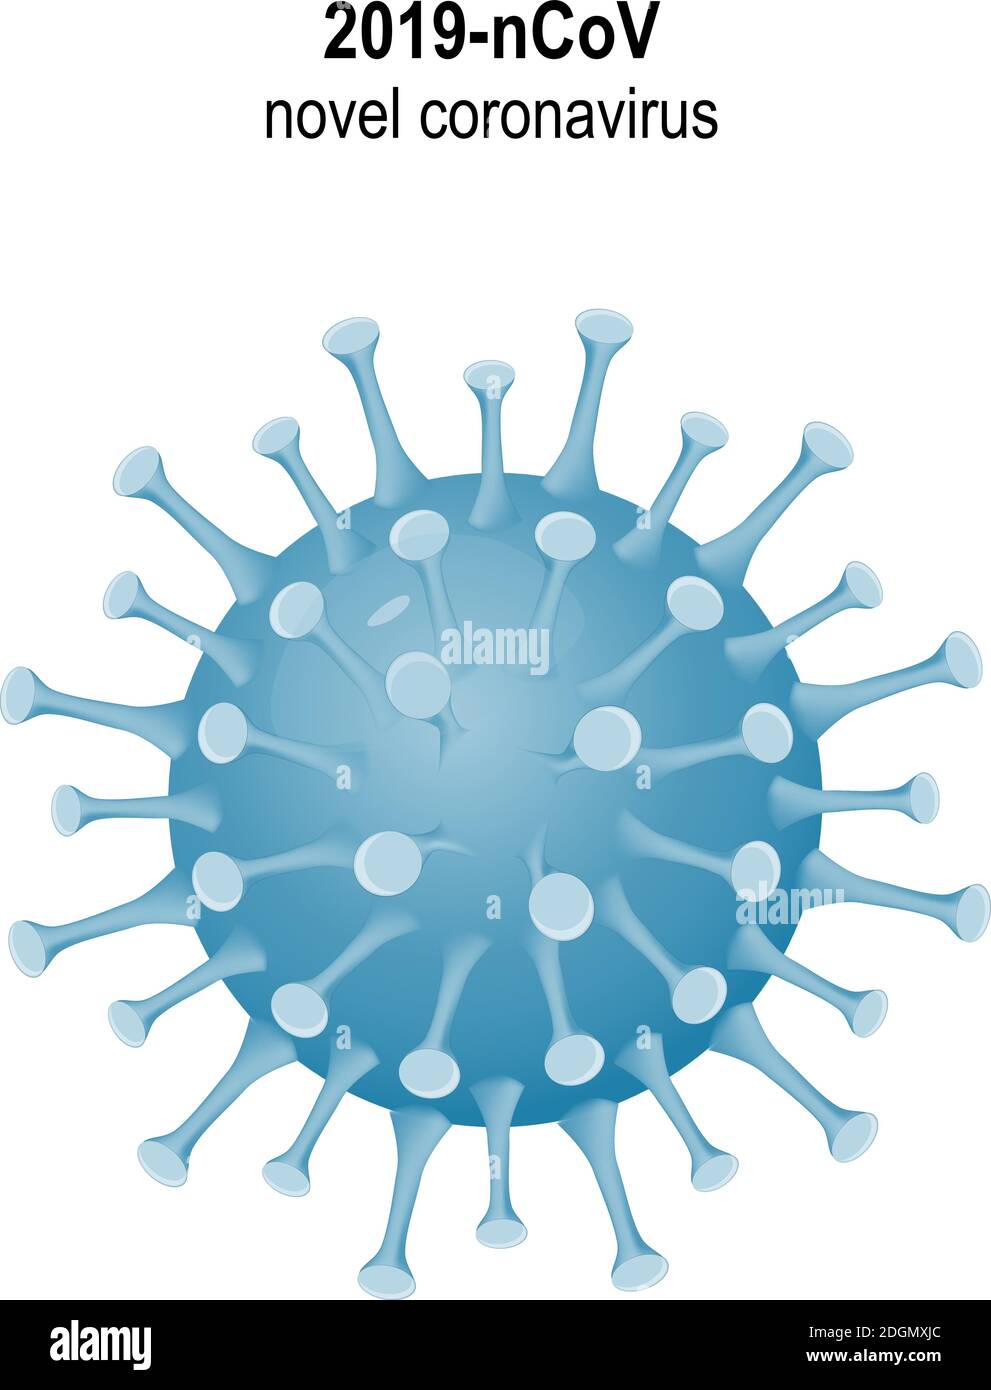 COVID-19. Icona, simbolo o unità del virus corona. Allarme pandemico globale di Coronavirus. 2019-nCoV malattia respiratoria acuta Illustrazione Vettoriale